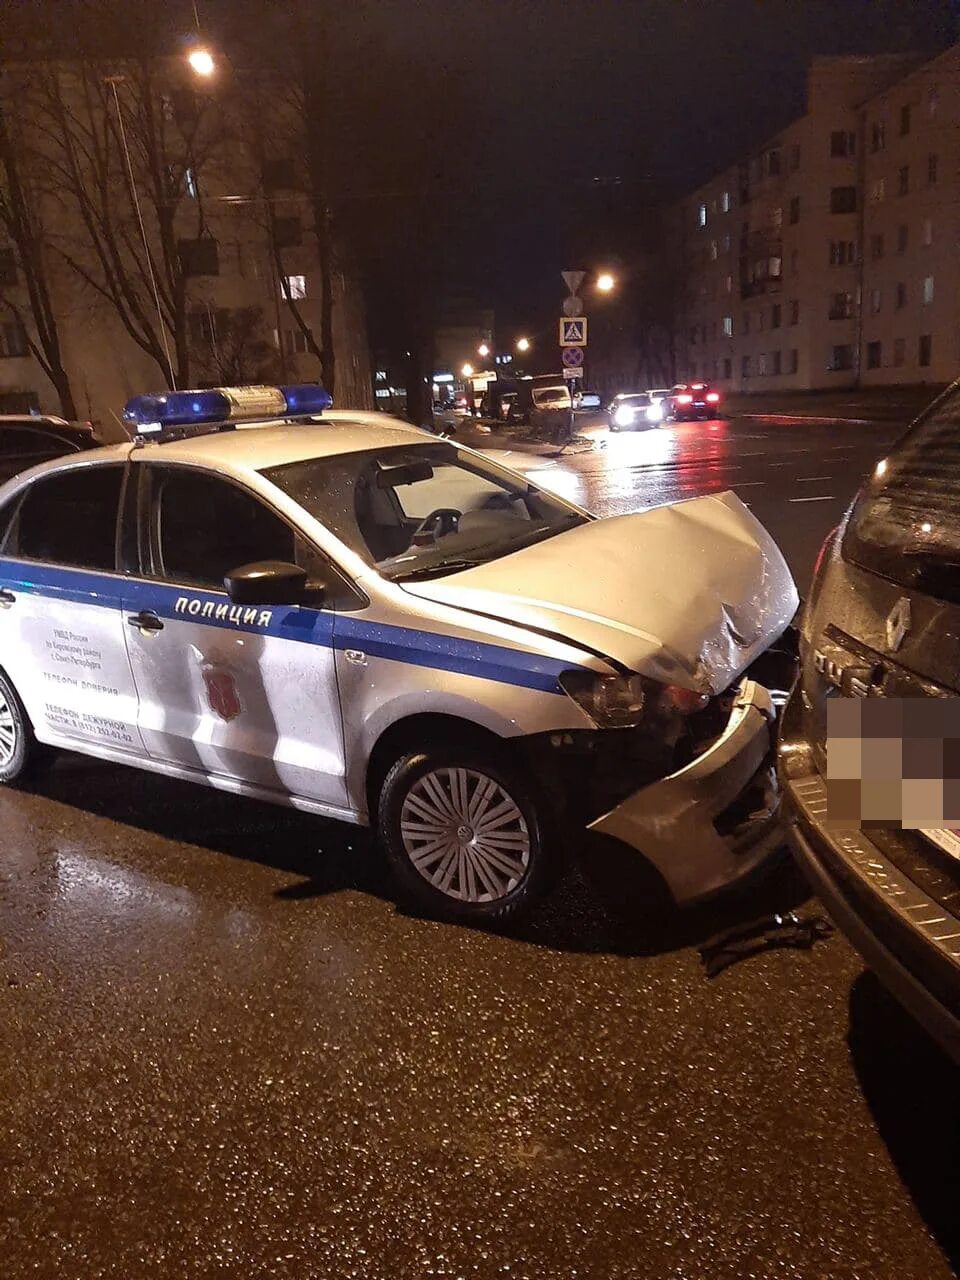 Полиция СПБ. Полицейские машины Санкт-Петербурга. Разбитые полицейские машины. Авария с полицейской машиной. Фонтанка ру новости санкт петербурга происшествия